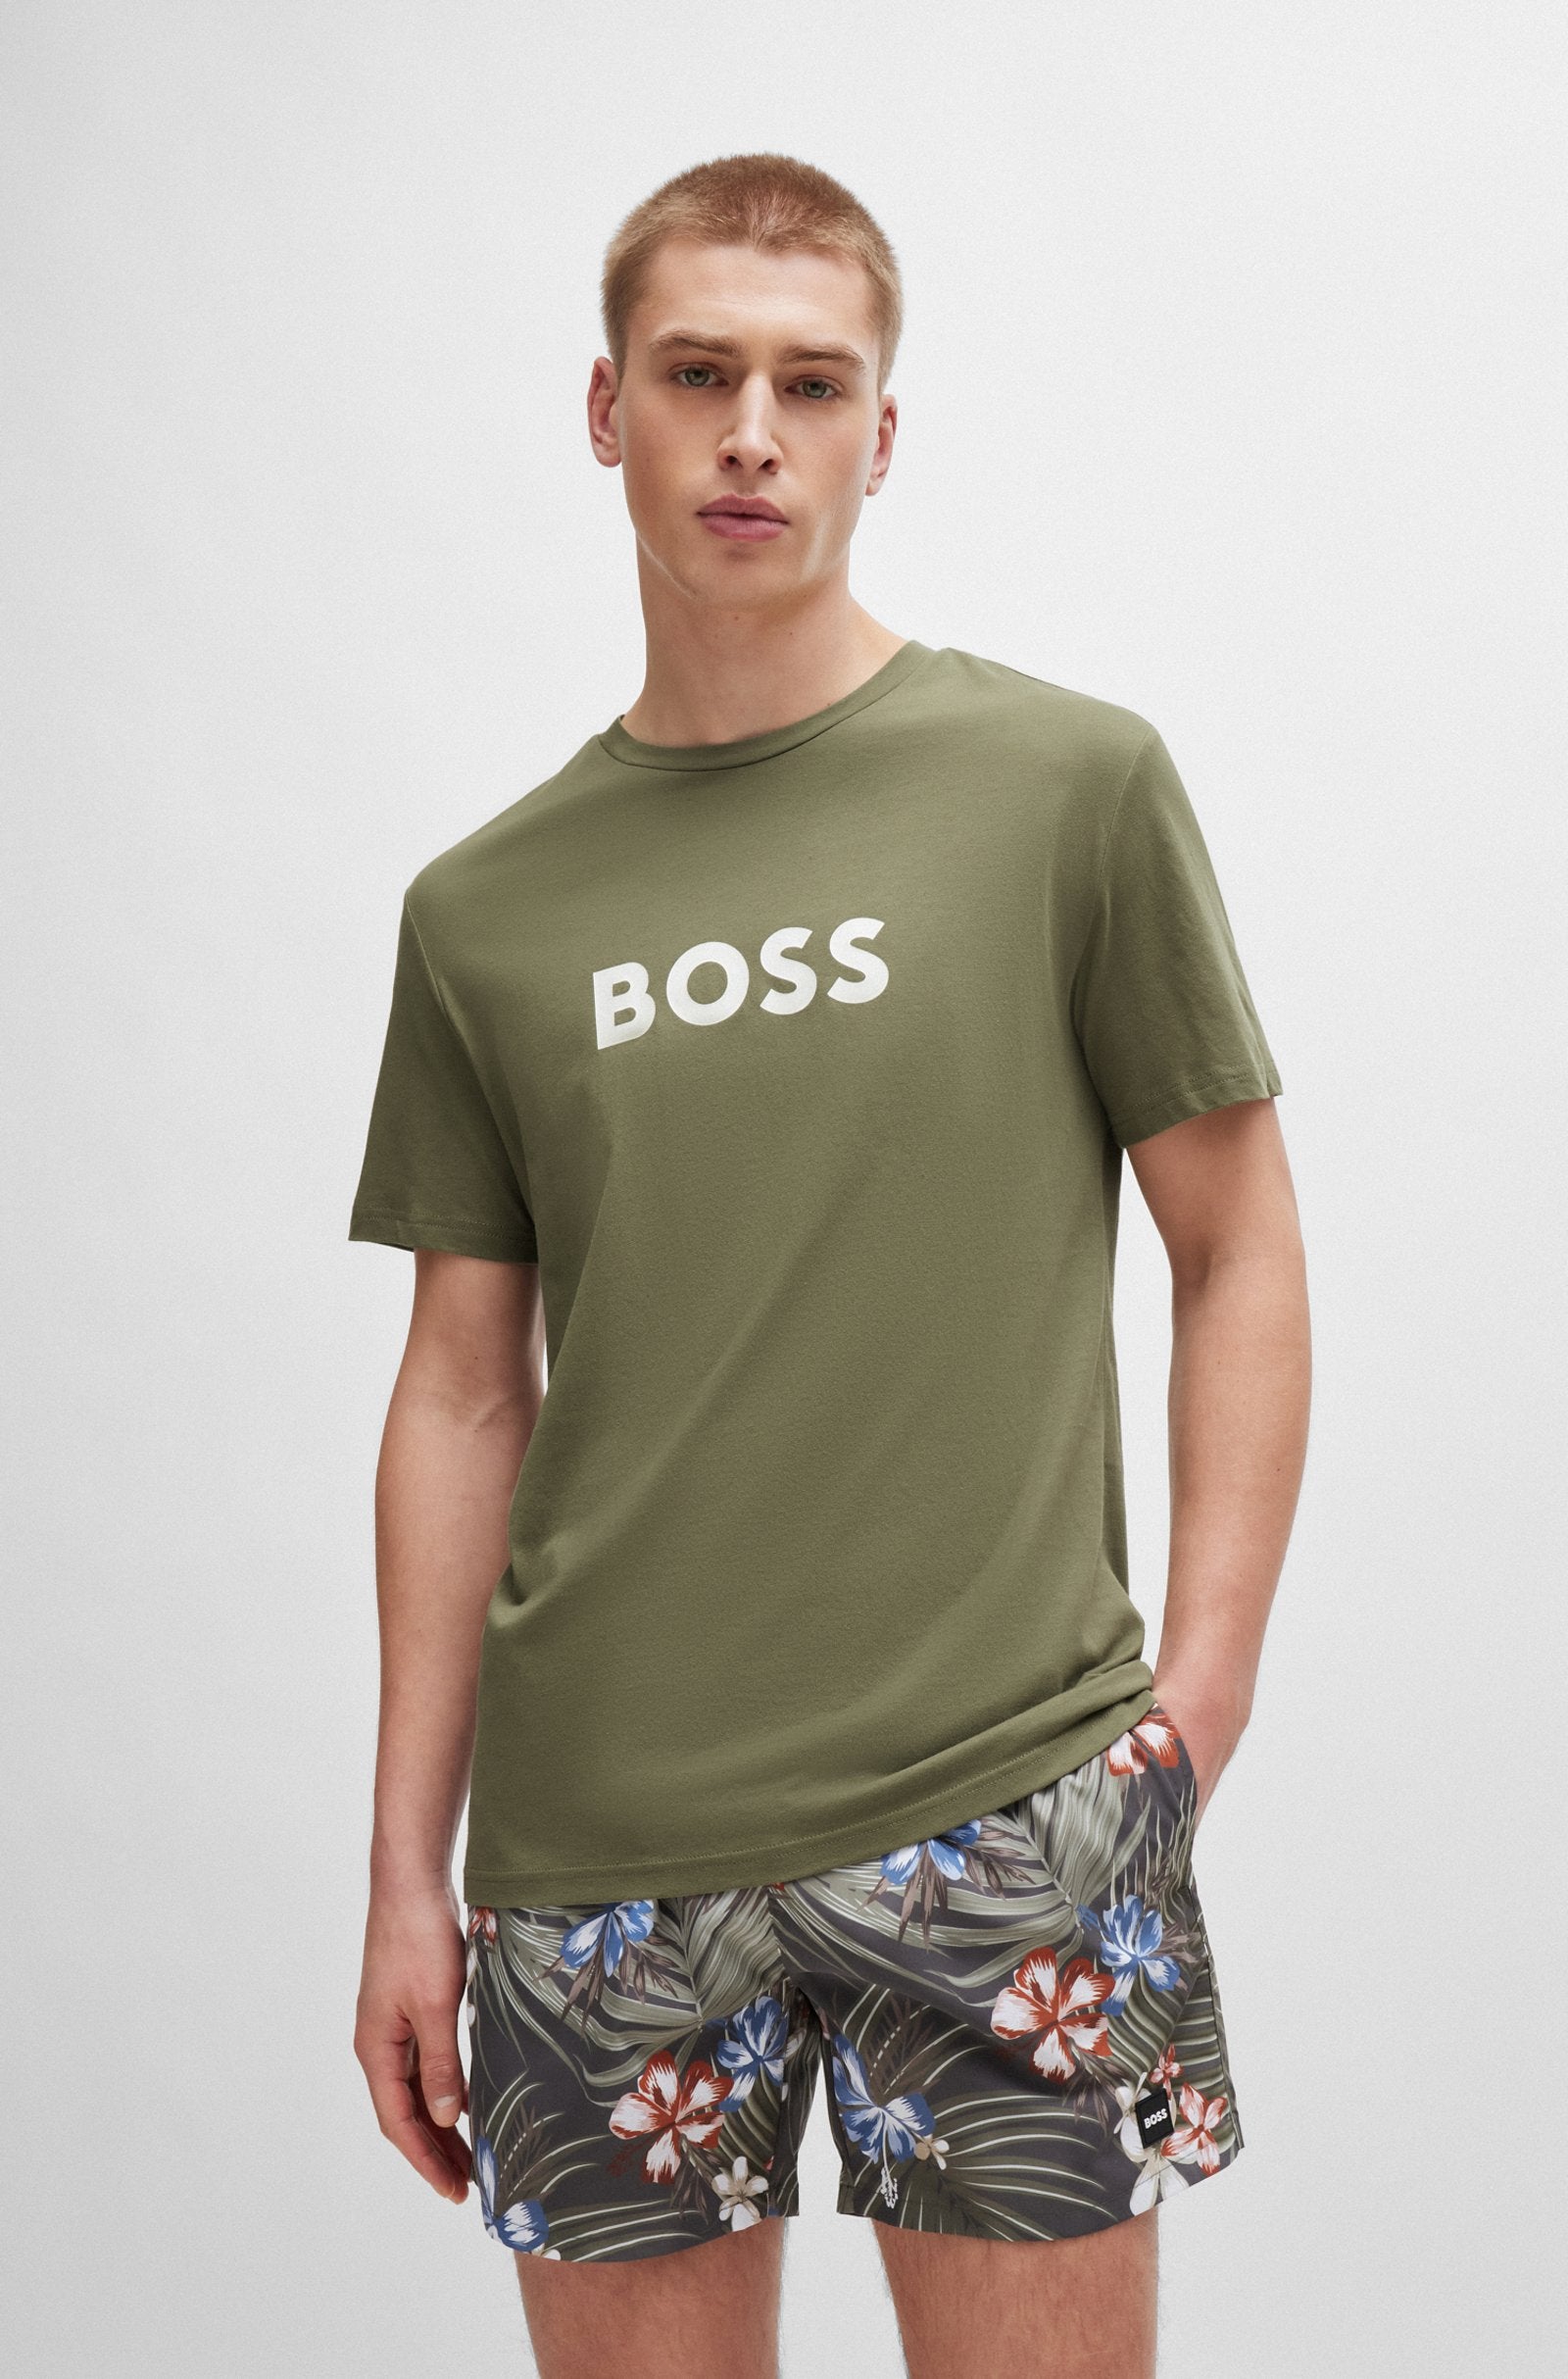 BOSS - Cotton-Jersey Regular Fit T-SHIRT in Beige/Khaki 50503276 250